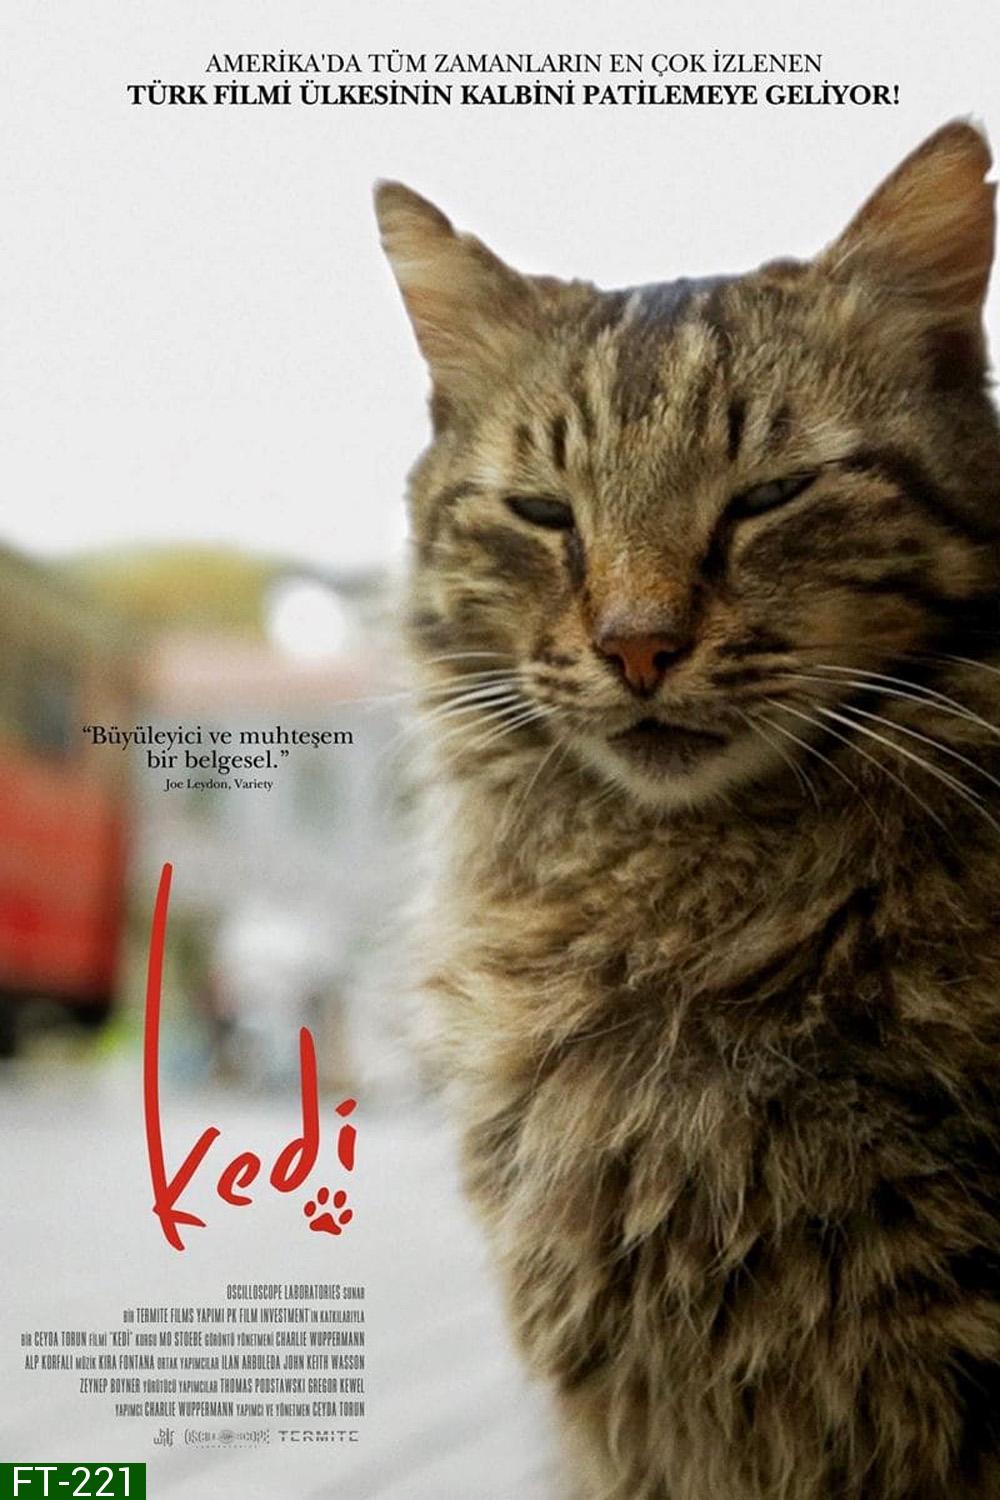 Kedi เมืองแมว (2016) สารคดีแมวเมืองอิสตัลบูล ทาสแมวต้องไม่พลาด!!